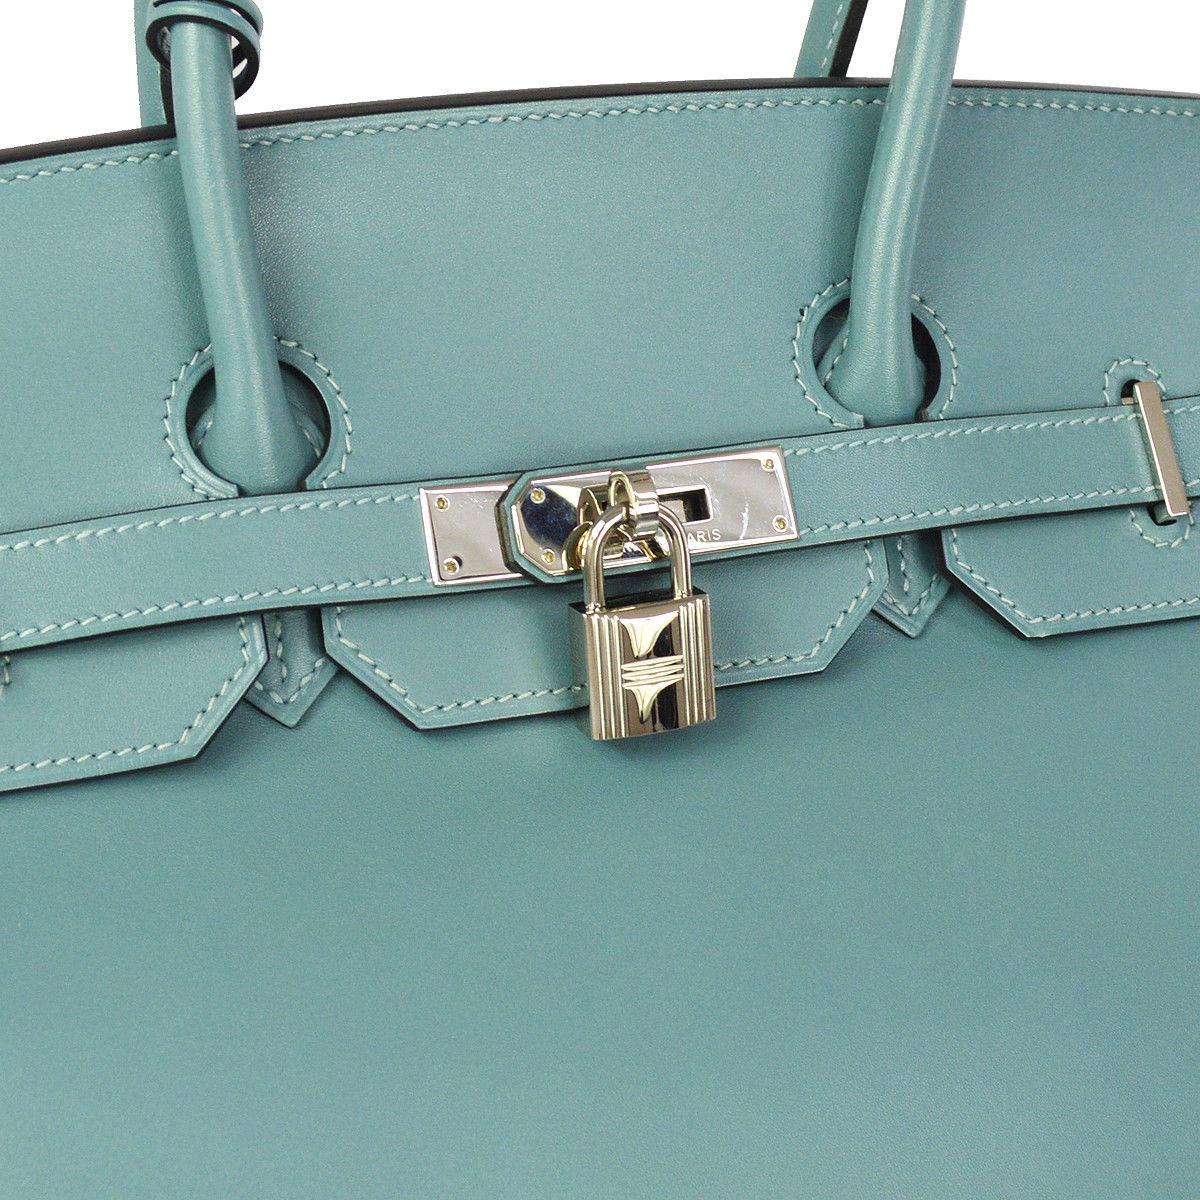 Hermes Birkin 35 Tiffany Blue Leder Palladium SilverTop Handle Satchel Travel Shoulder Bag

Leder
Palladium-silberfarbene Hardware
Lederfutter
Datumscode vorhanden
Hergestellt in Frankreich
Grifffall 4